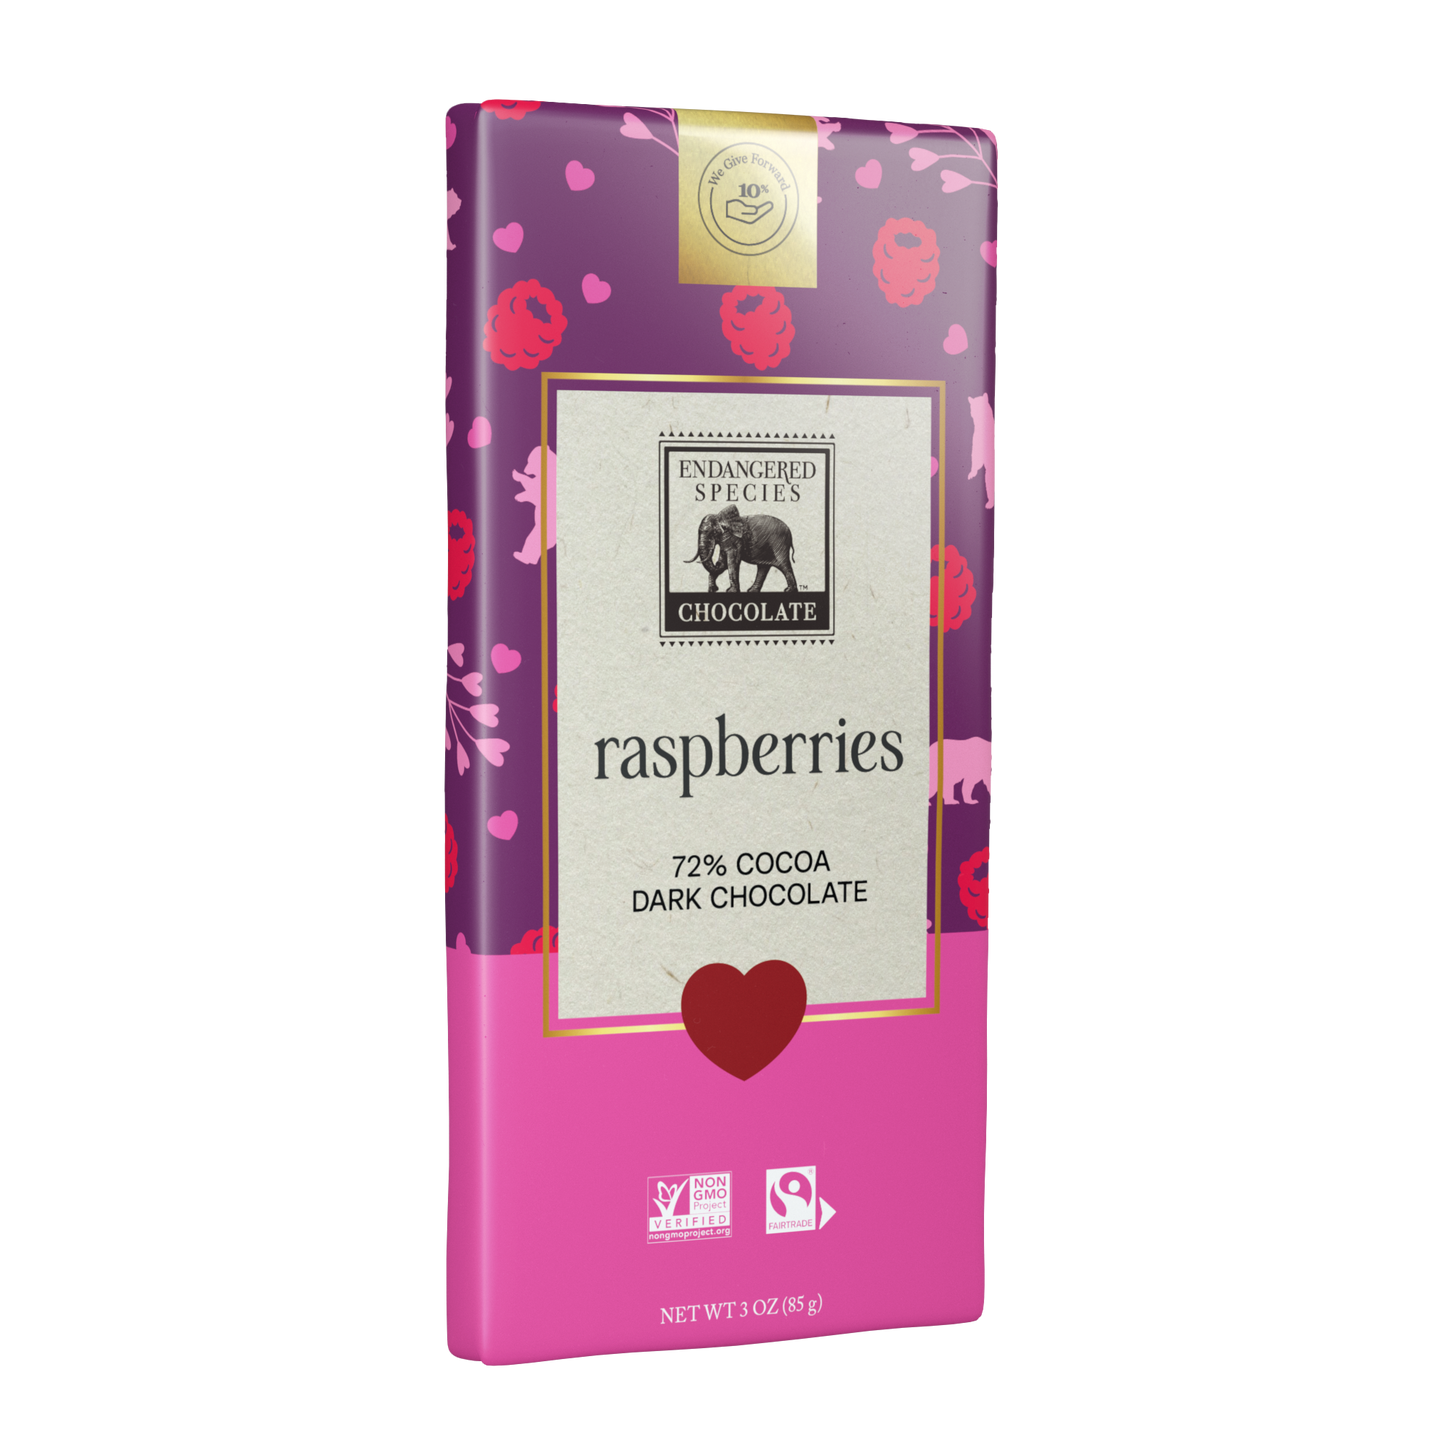 raspberries + 72% dark chocolate - Valentine's Day Limited Addition